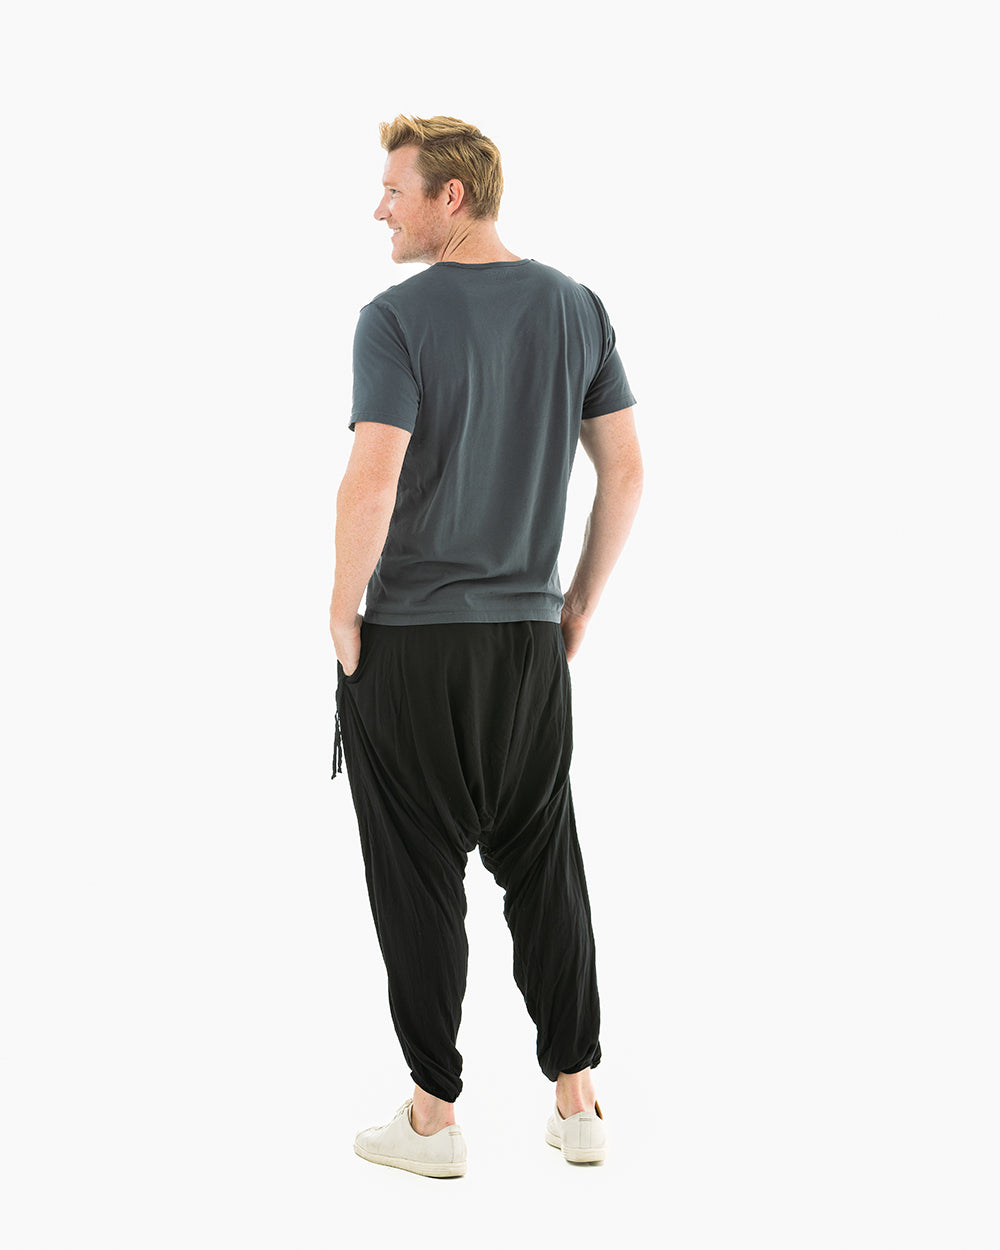 Buy Buddha Pants Harem Men's Savannah Flair Yoga Pants XX-Small Red Aztec  Online at desertcartSeychelles